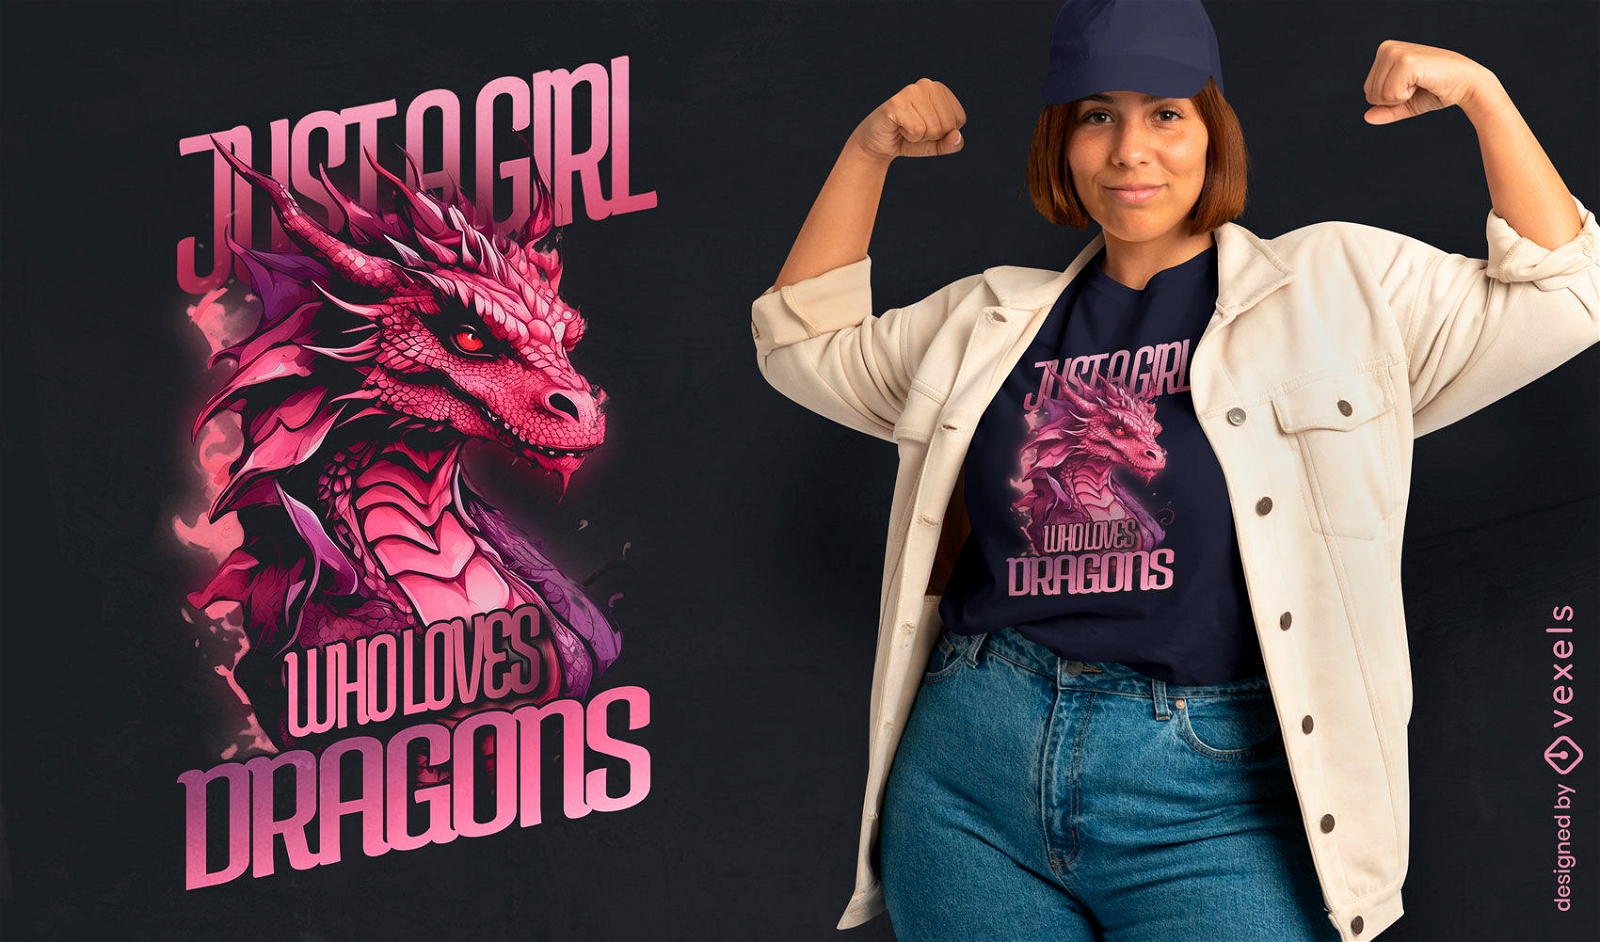 Dragon and girl t-shirt design